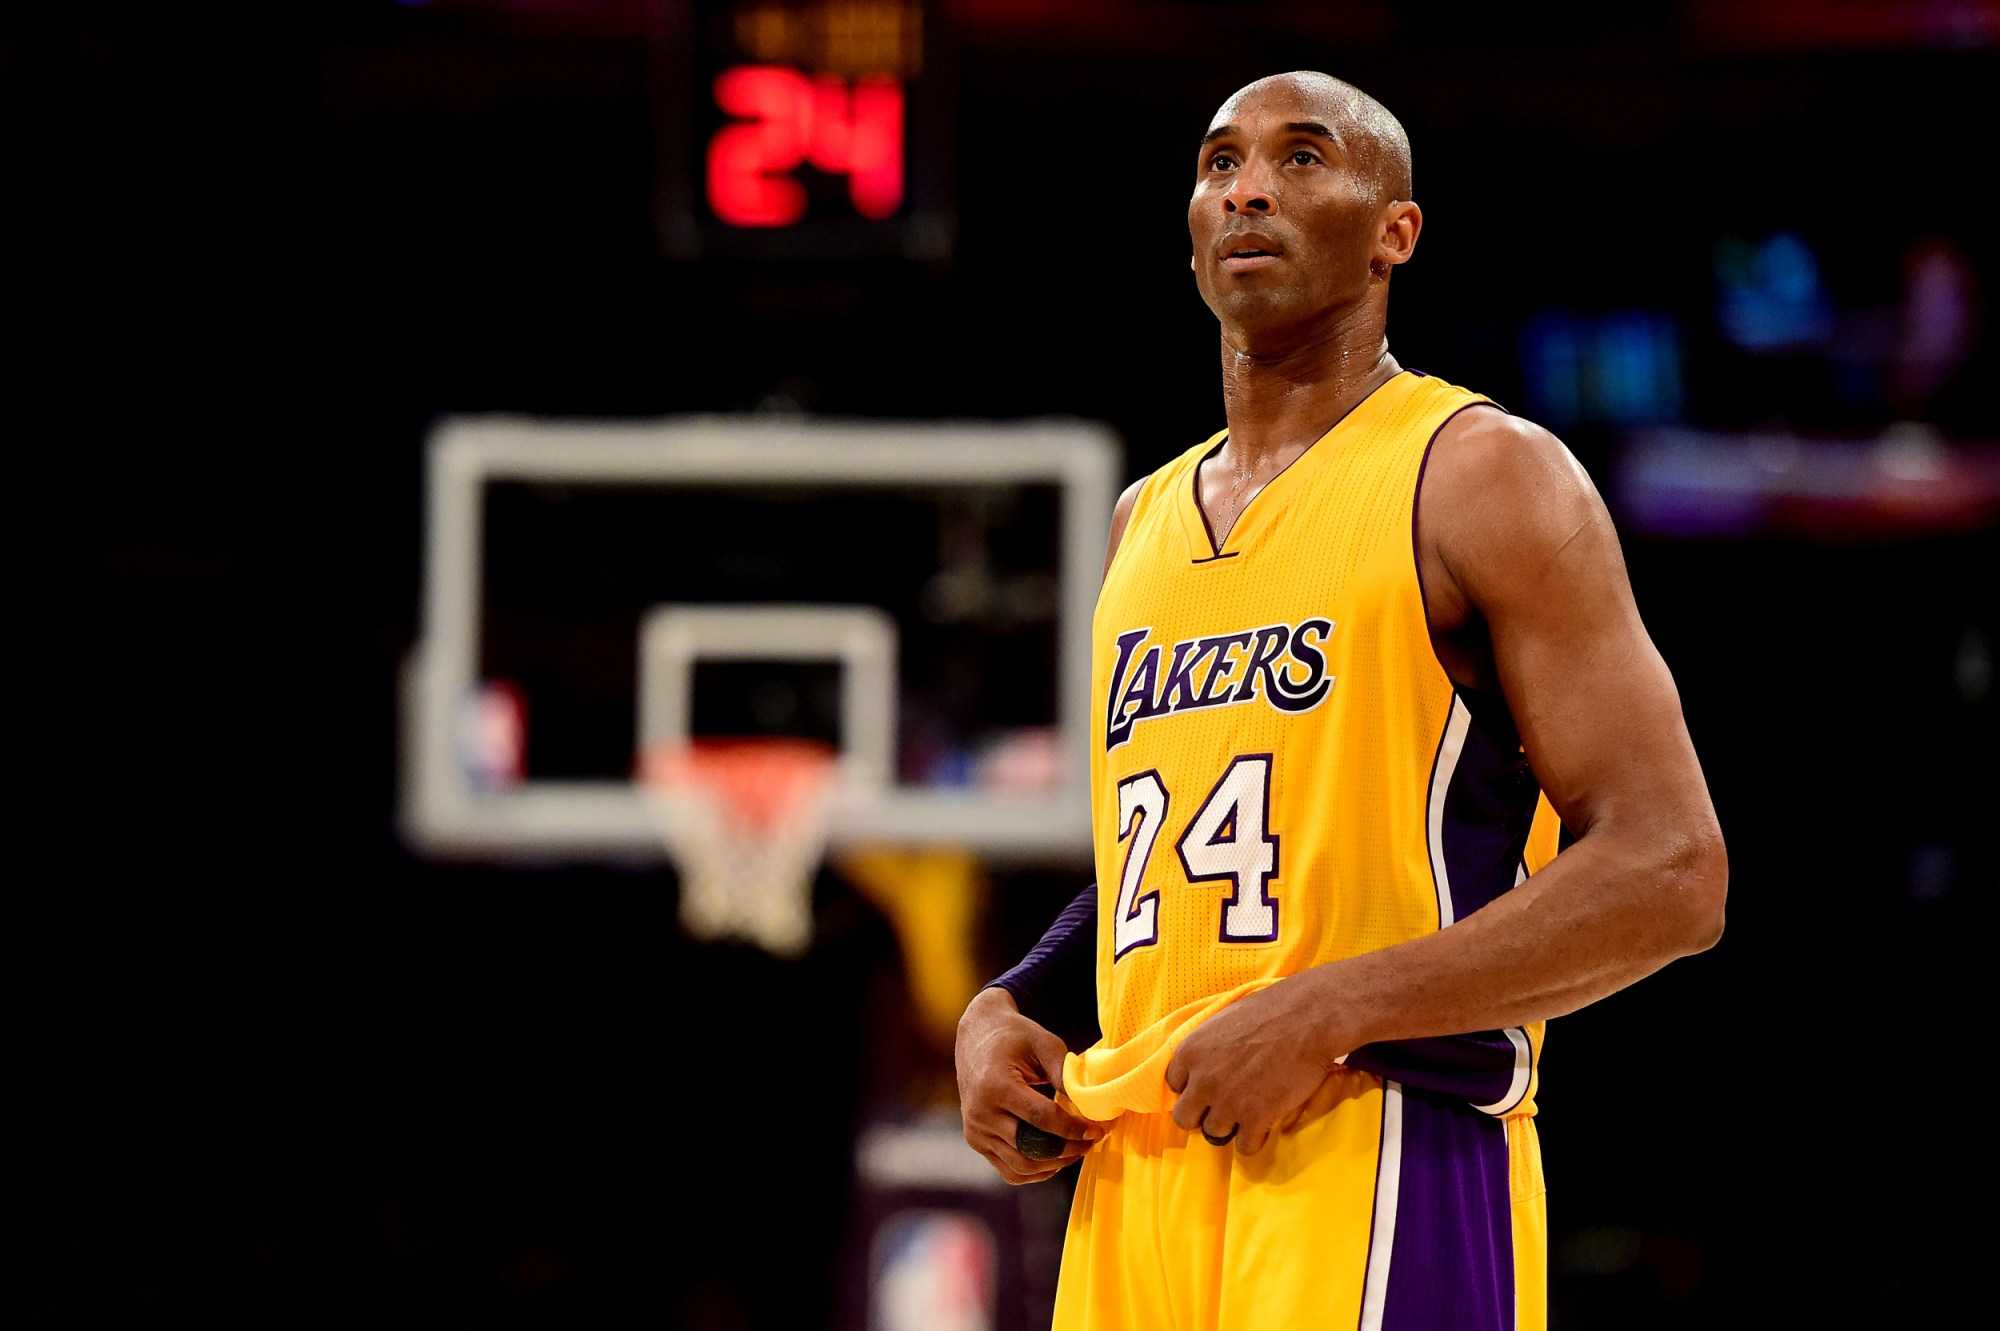 "Il était un homme libre sans pression": Shaquille O’Neal choisit son moment préféré de Kobe Bryant